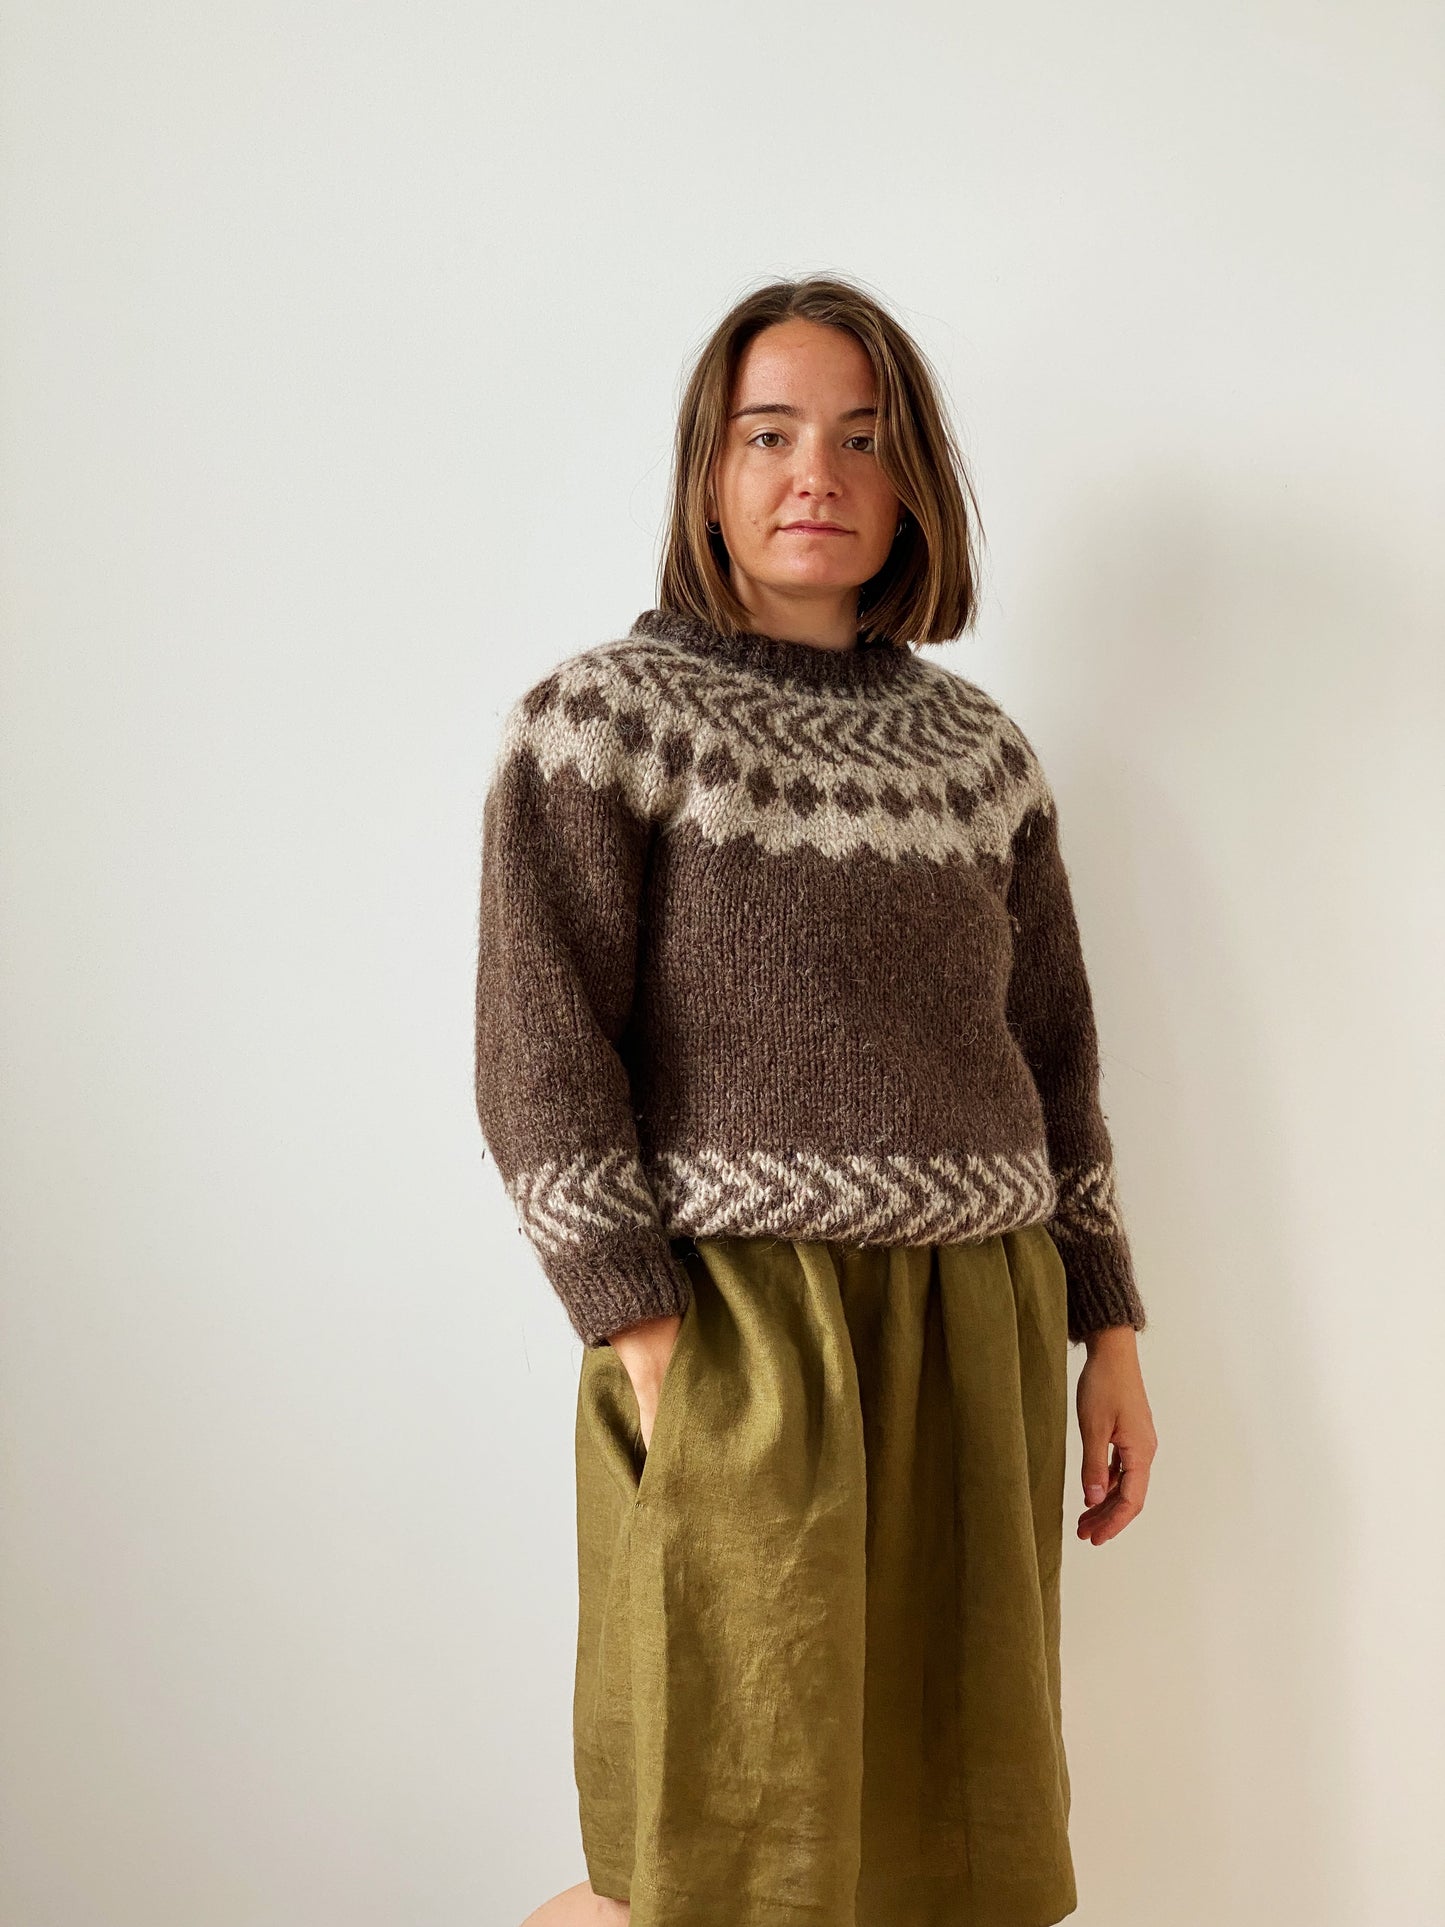 Hand knit sweater (xs)